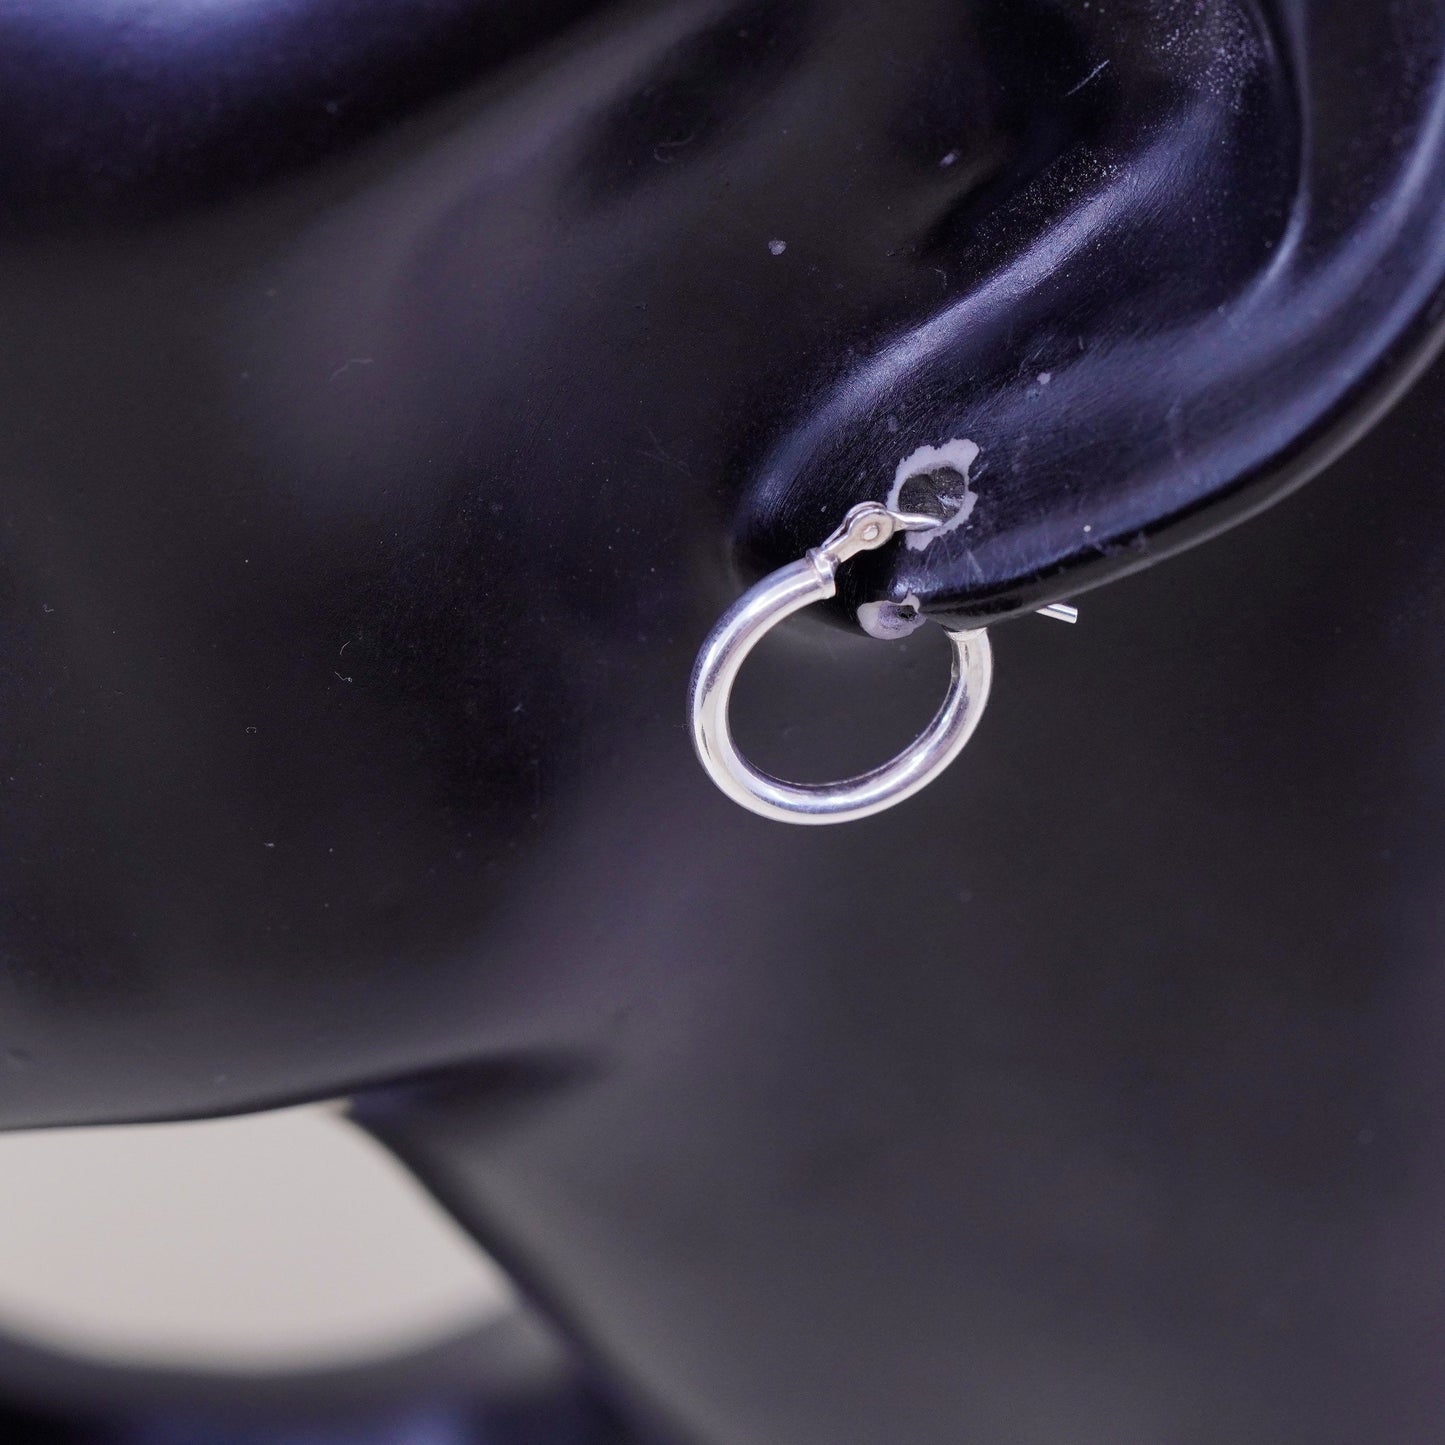 0.5”, Vintage sterling silver loop earrings, minimalist, 925 hoops, huggie